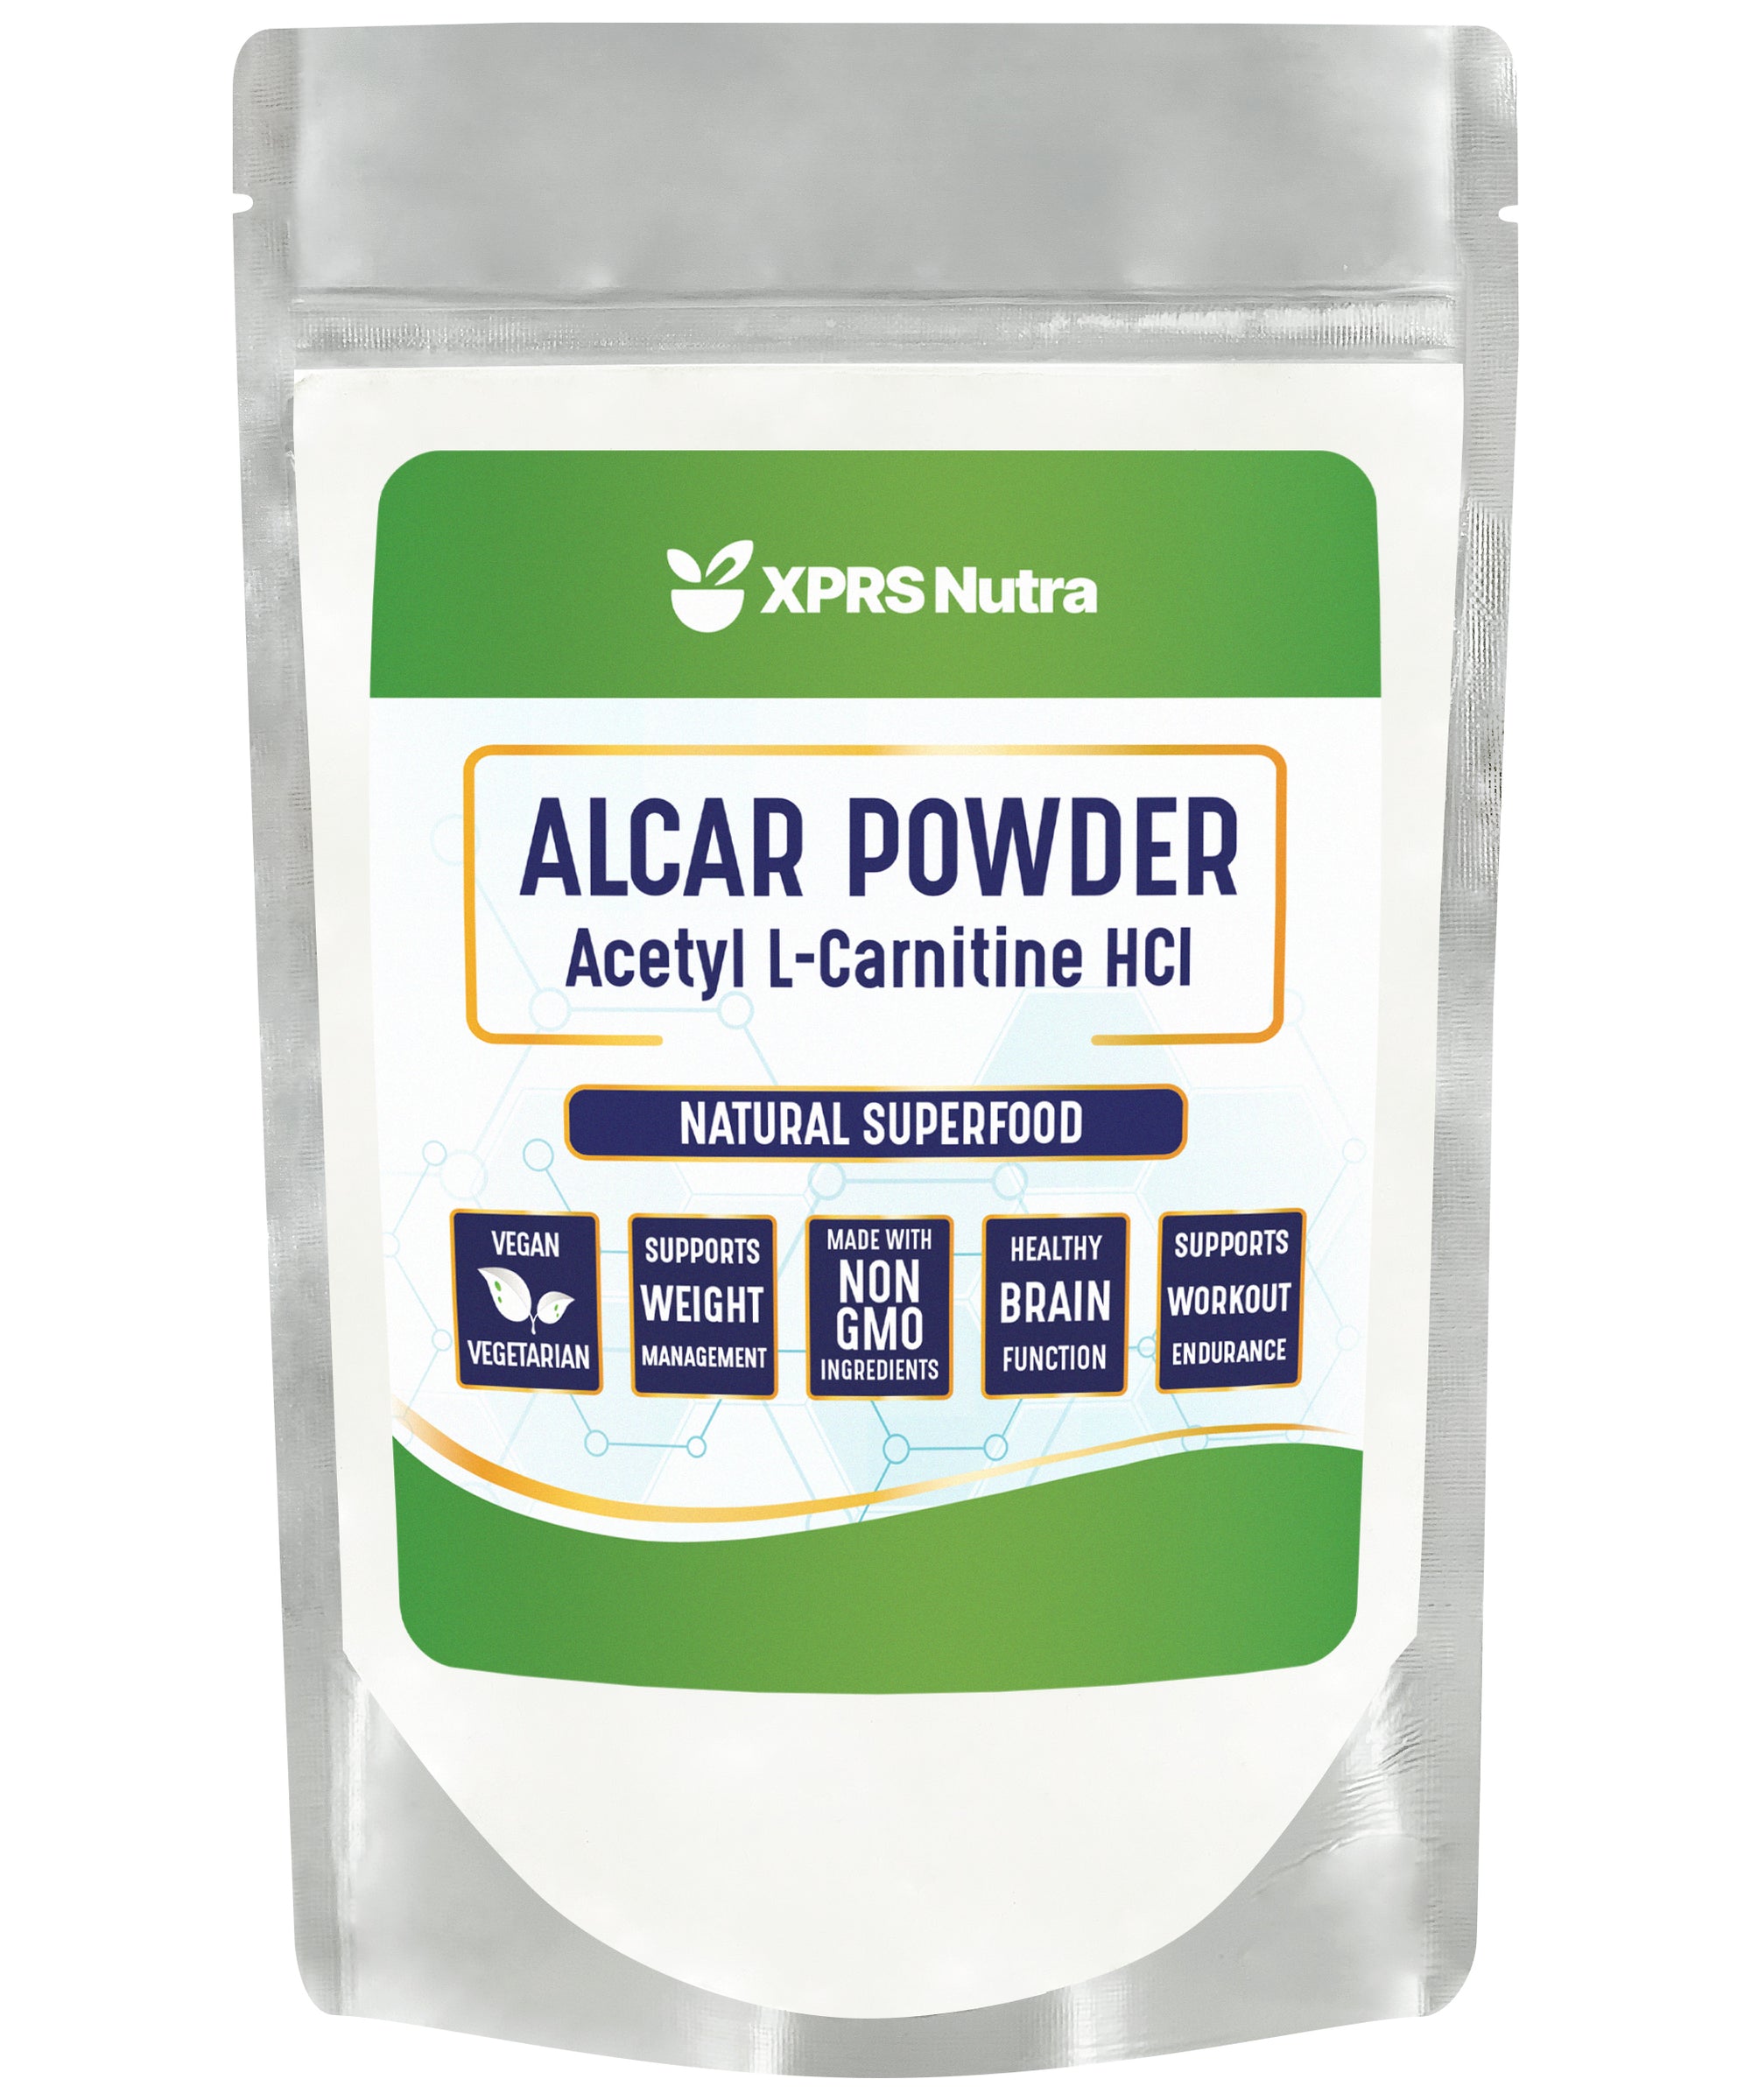 ALCAR Acetyl L-Carnitine Powder